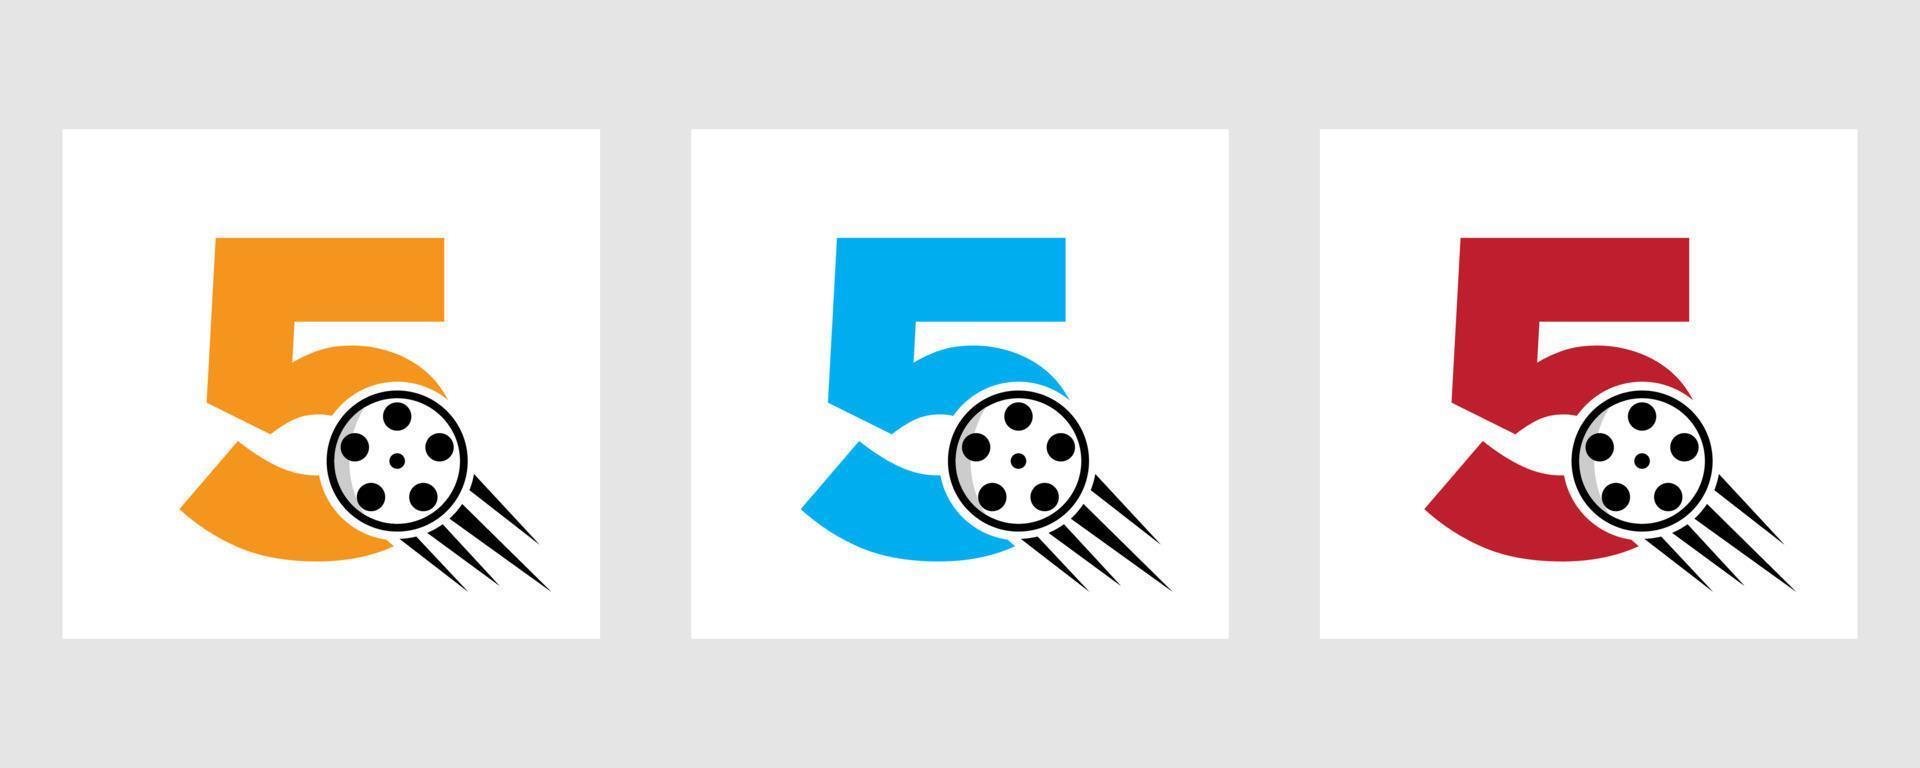 buchstabe 5 film logo konzept mit filmrolle für medienzeichen, filmregisseur symbol vektor